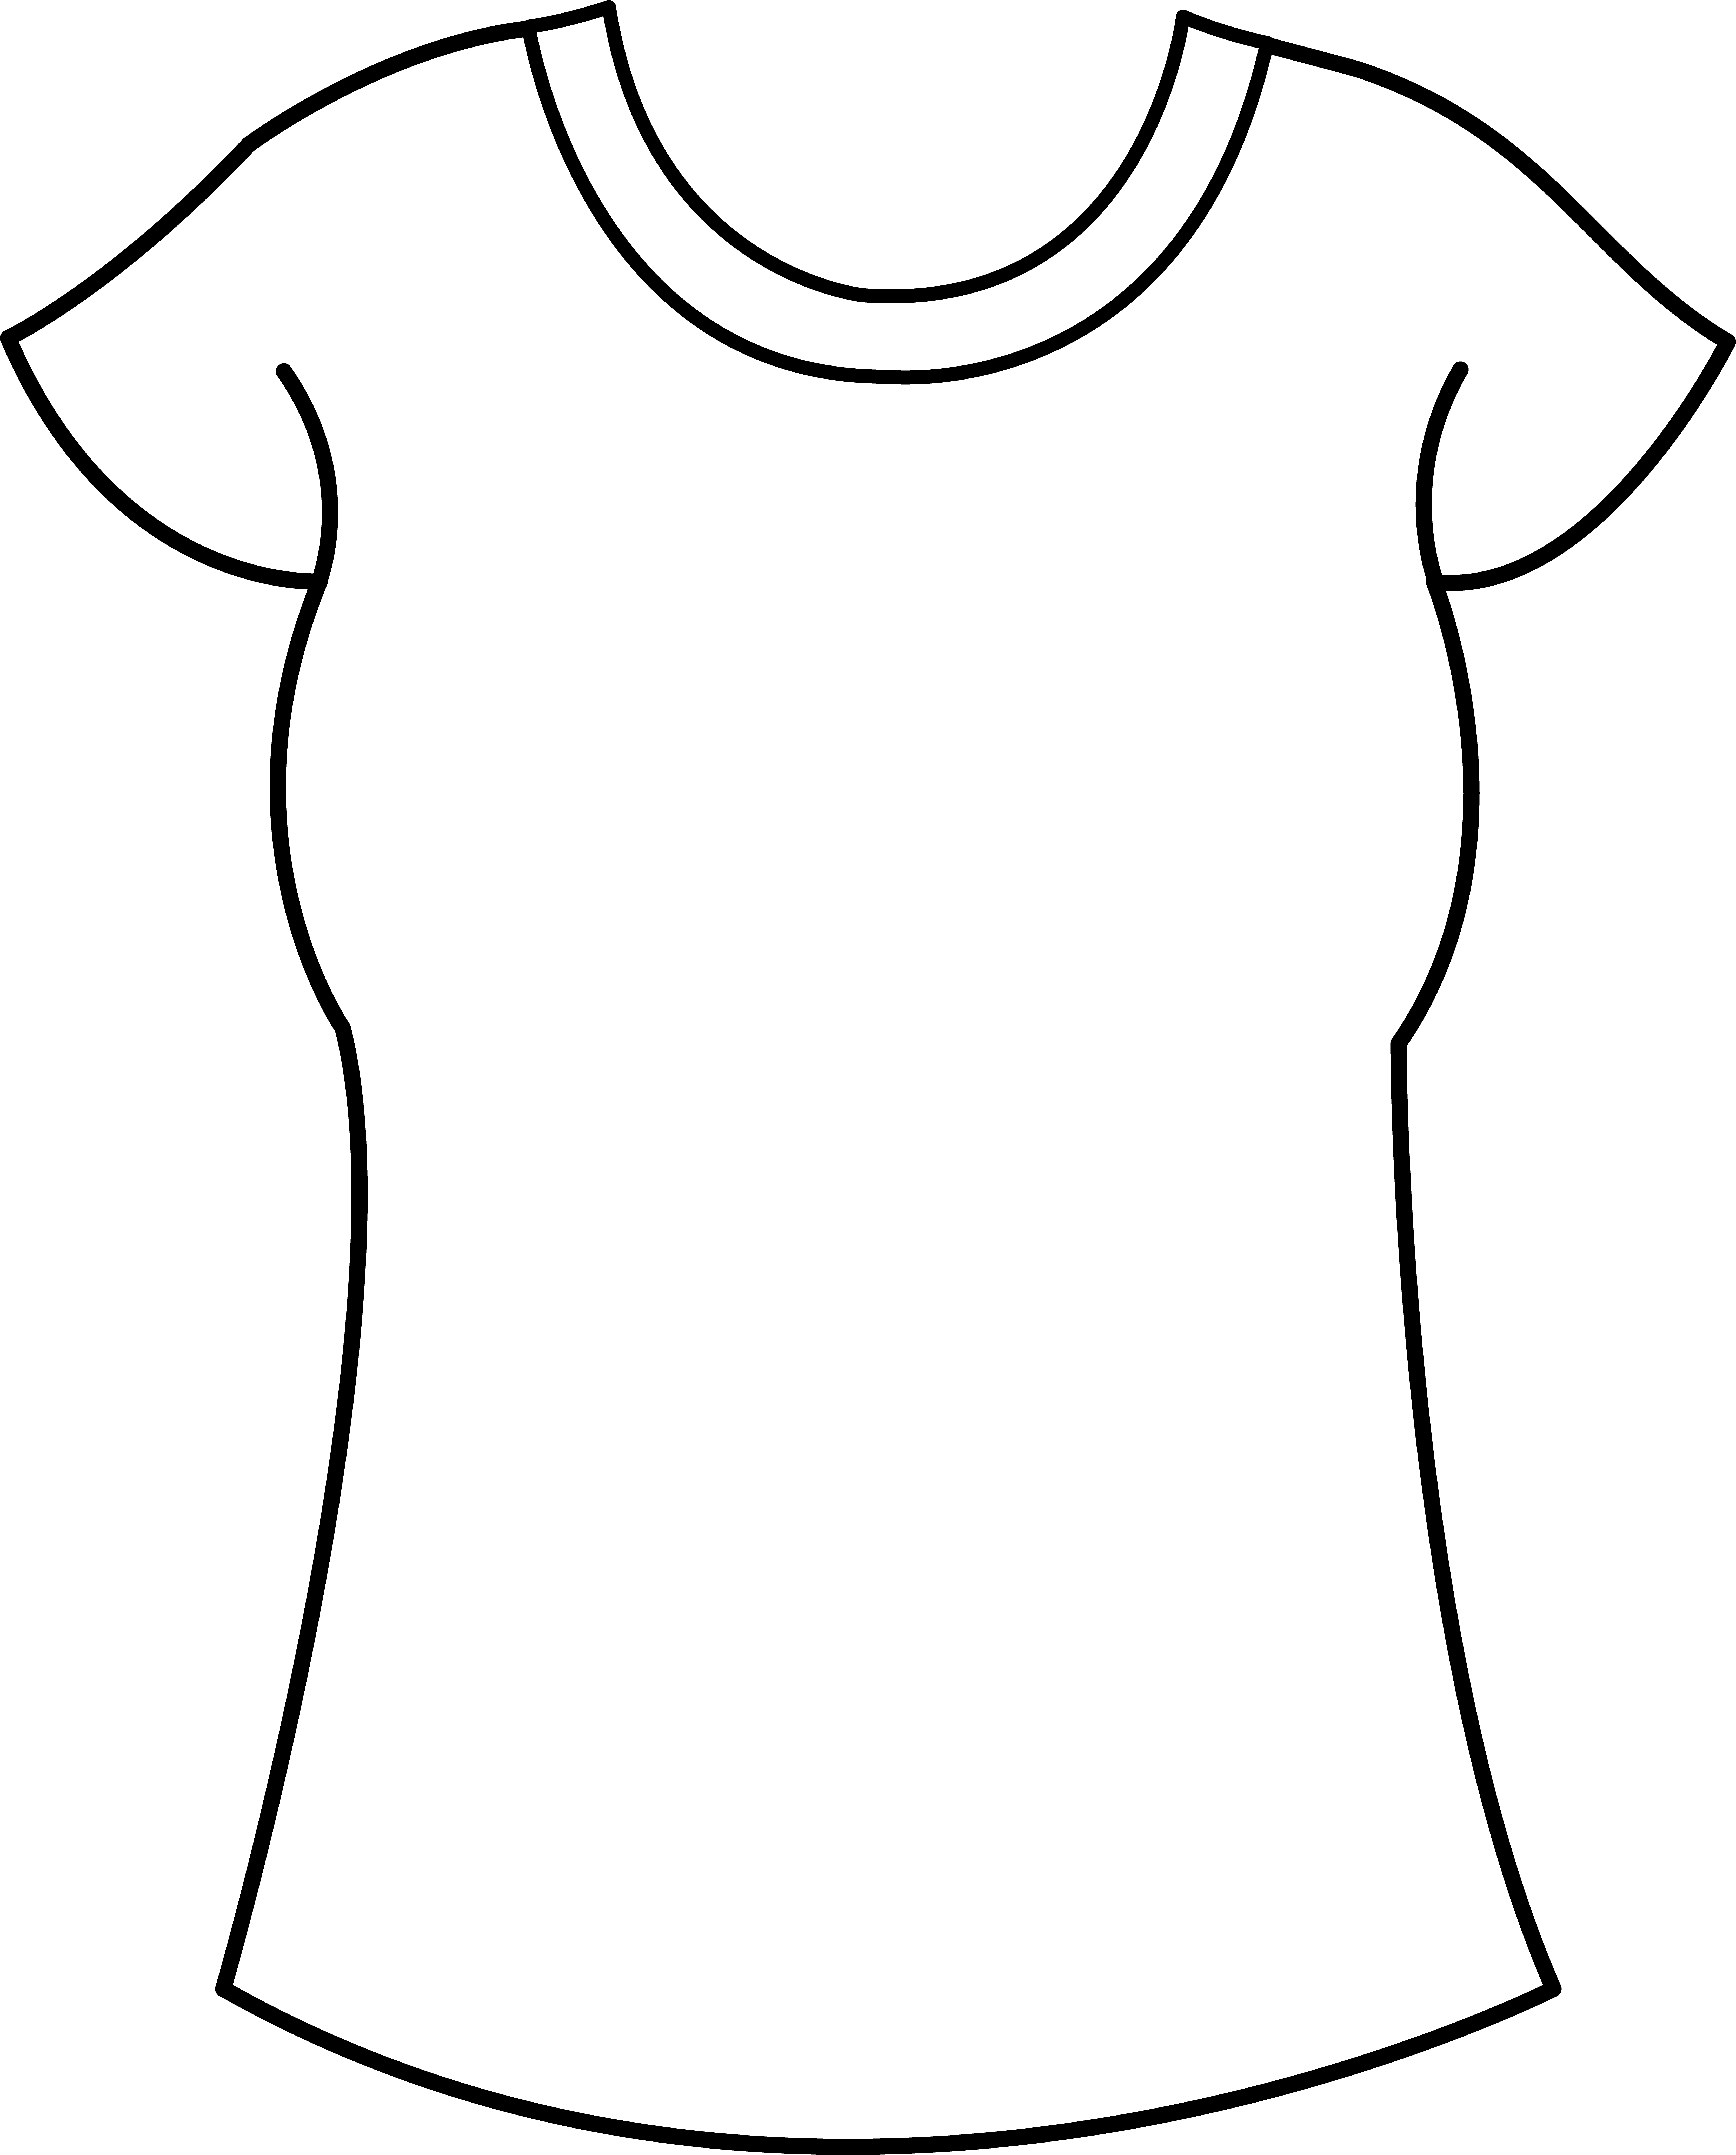 Clothing women's clothing